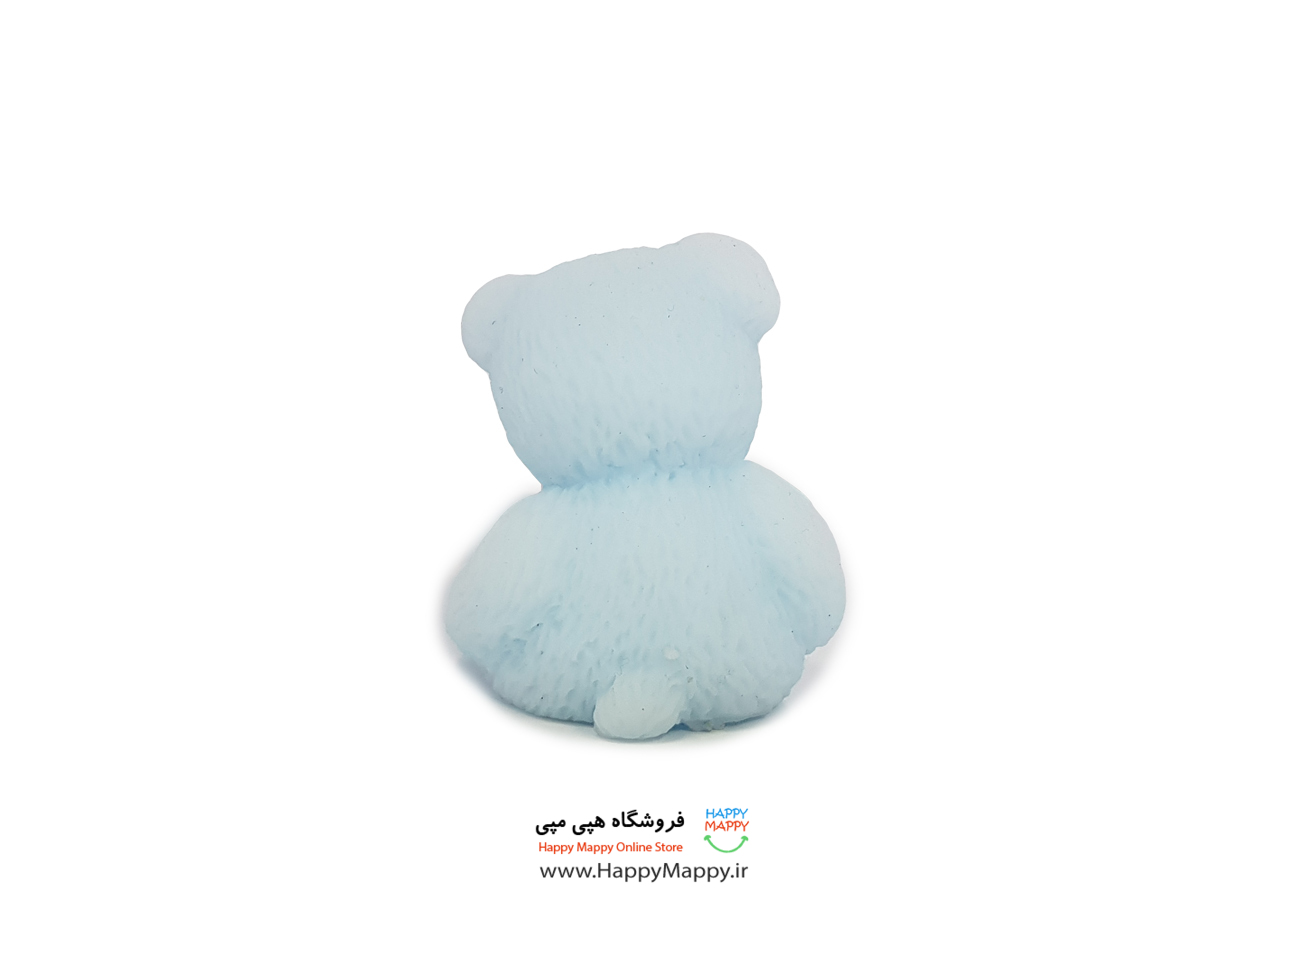 نرمالو کوچک سلفونی طرح خرس آبی رنگ